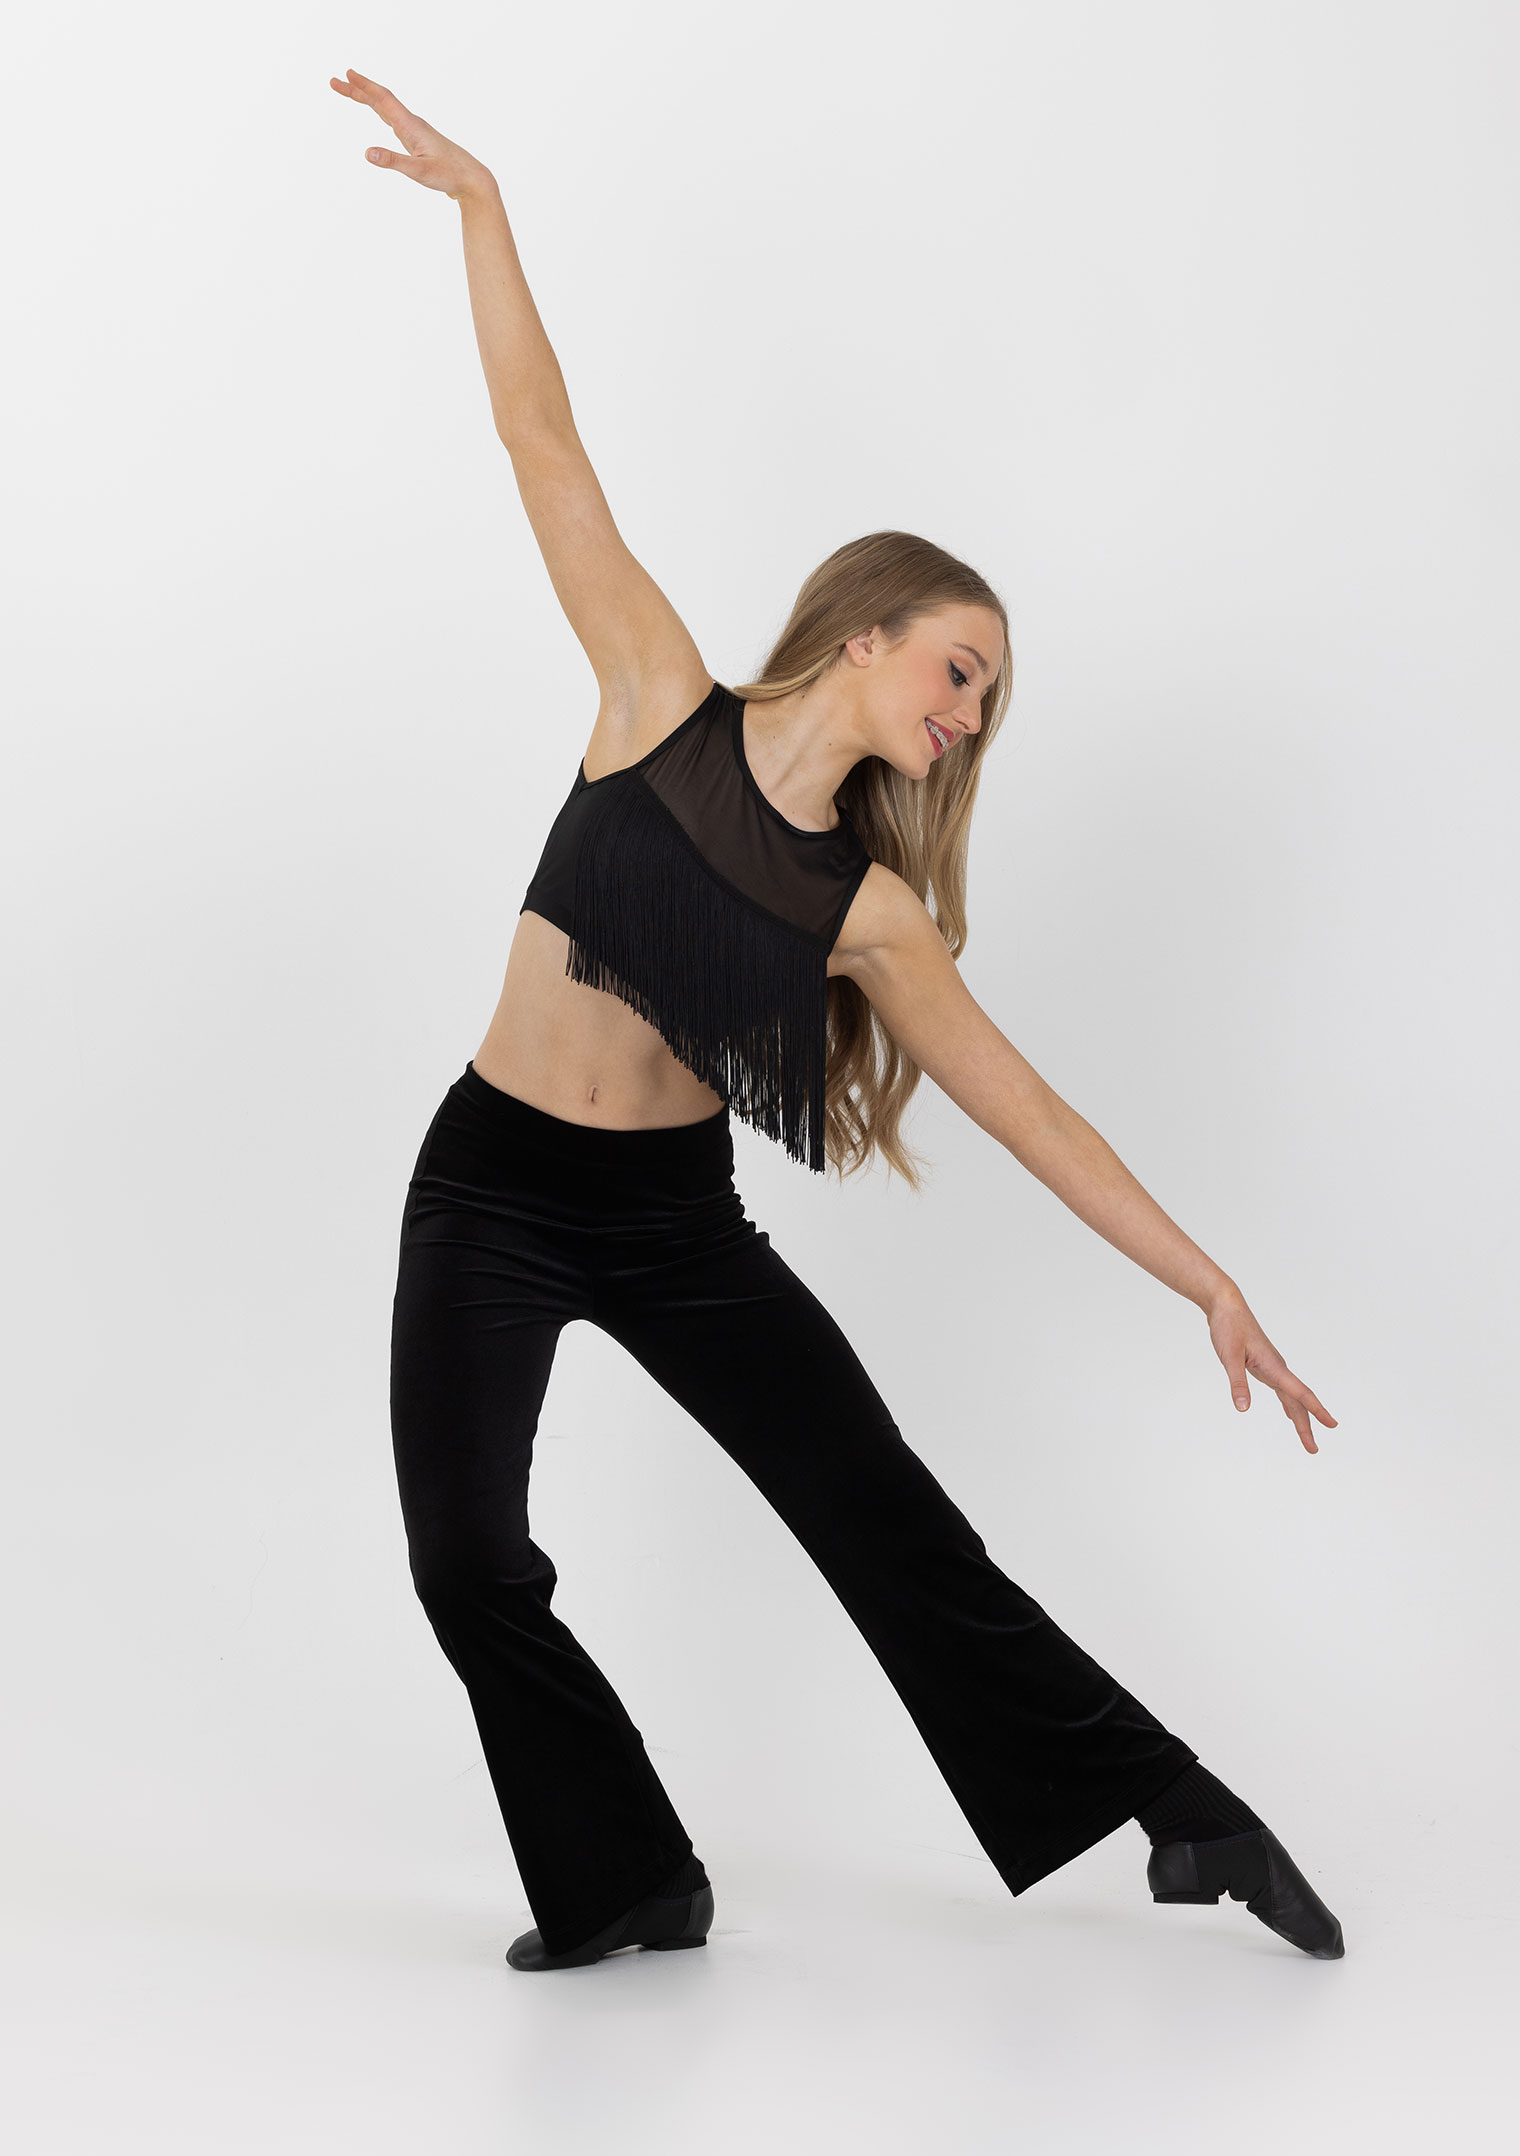 Dance Workshops for Adults  Ballet Austin